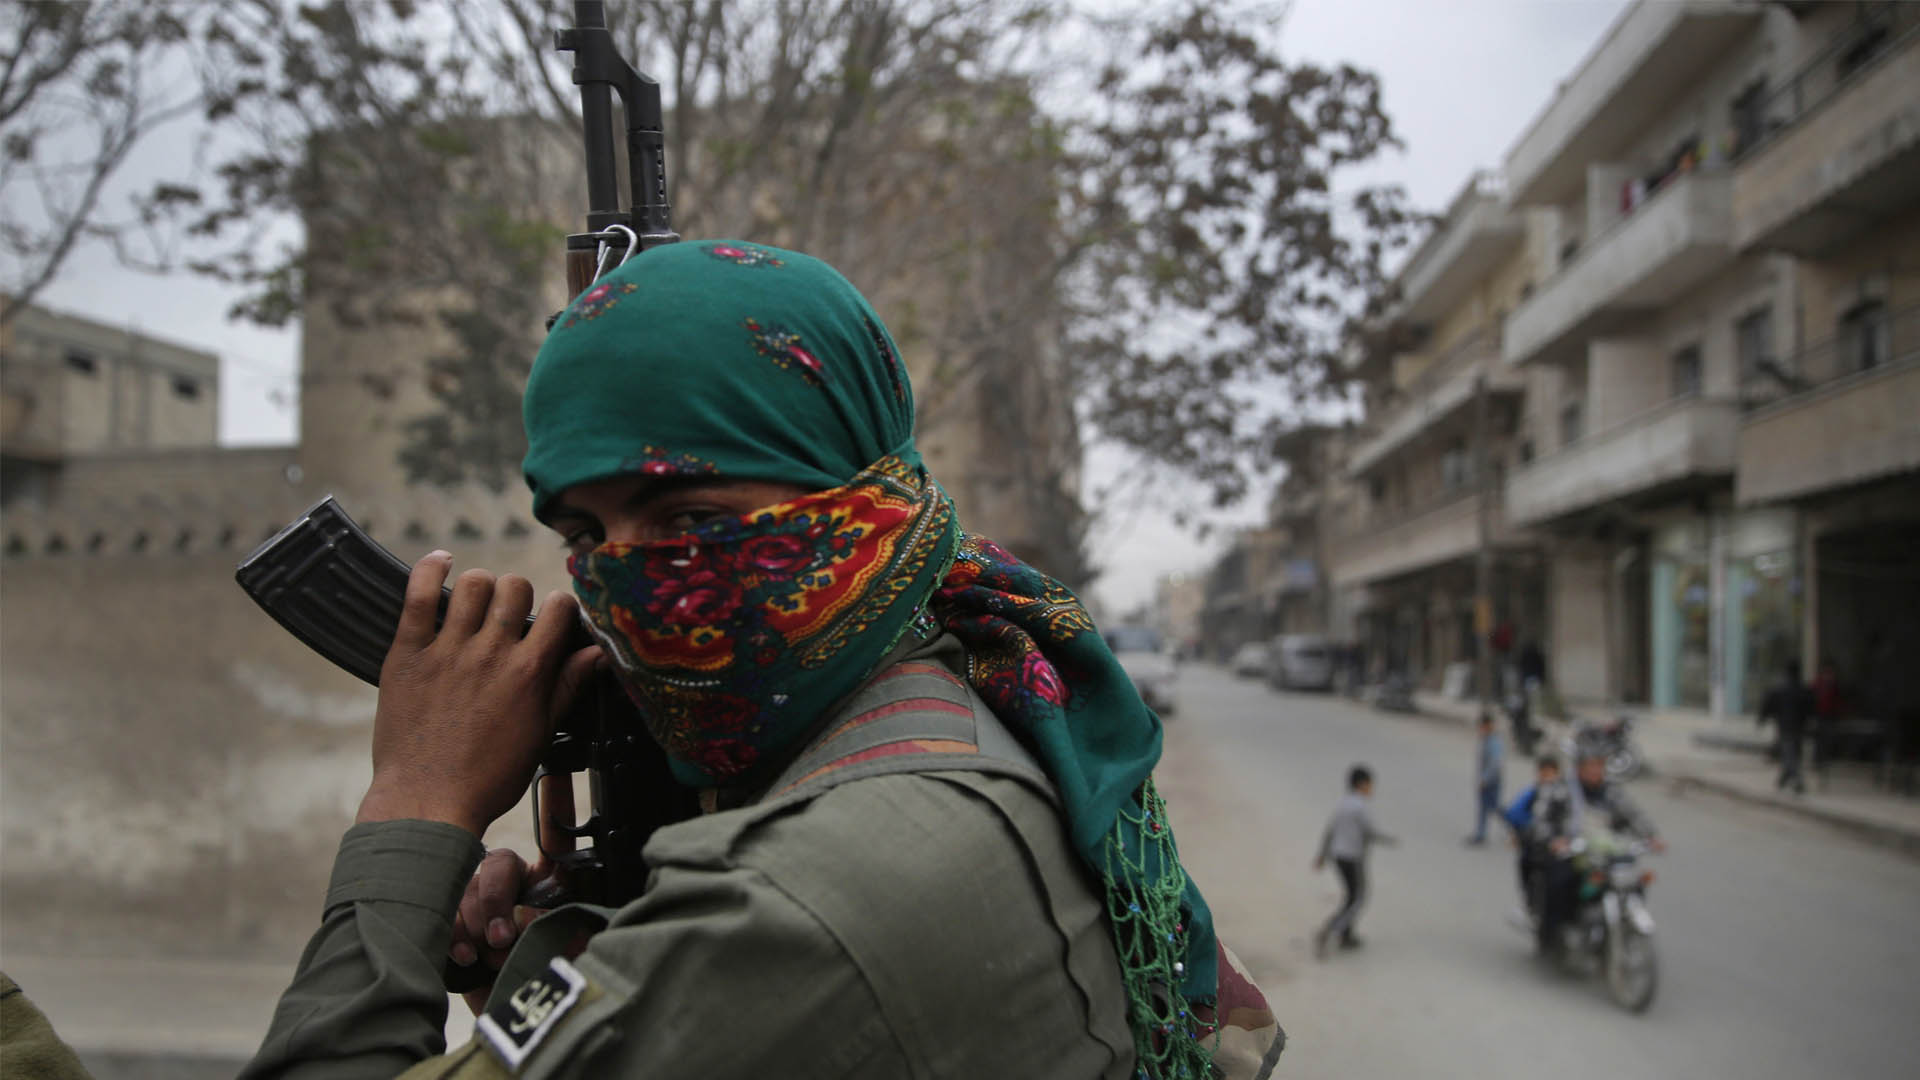 Kurdos, los luchadores contra el Estado Islámico que EEUU abandona y Turquía quiere eliminar